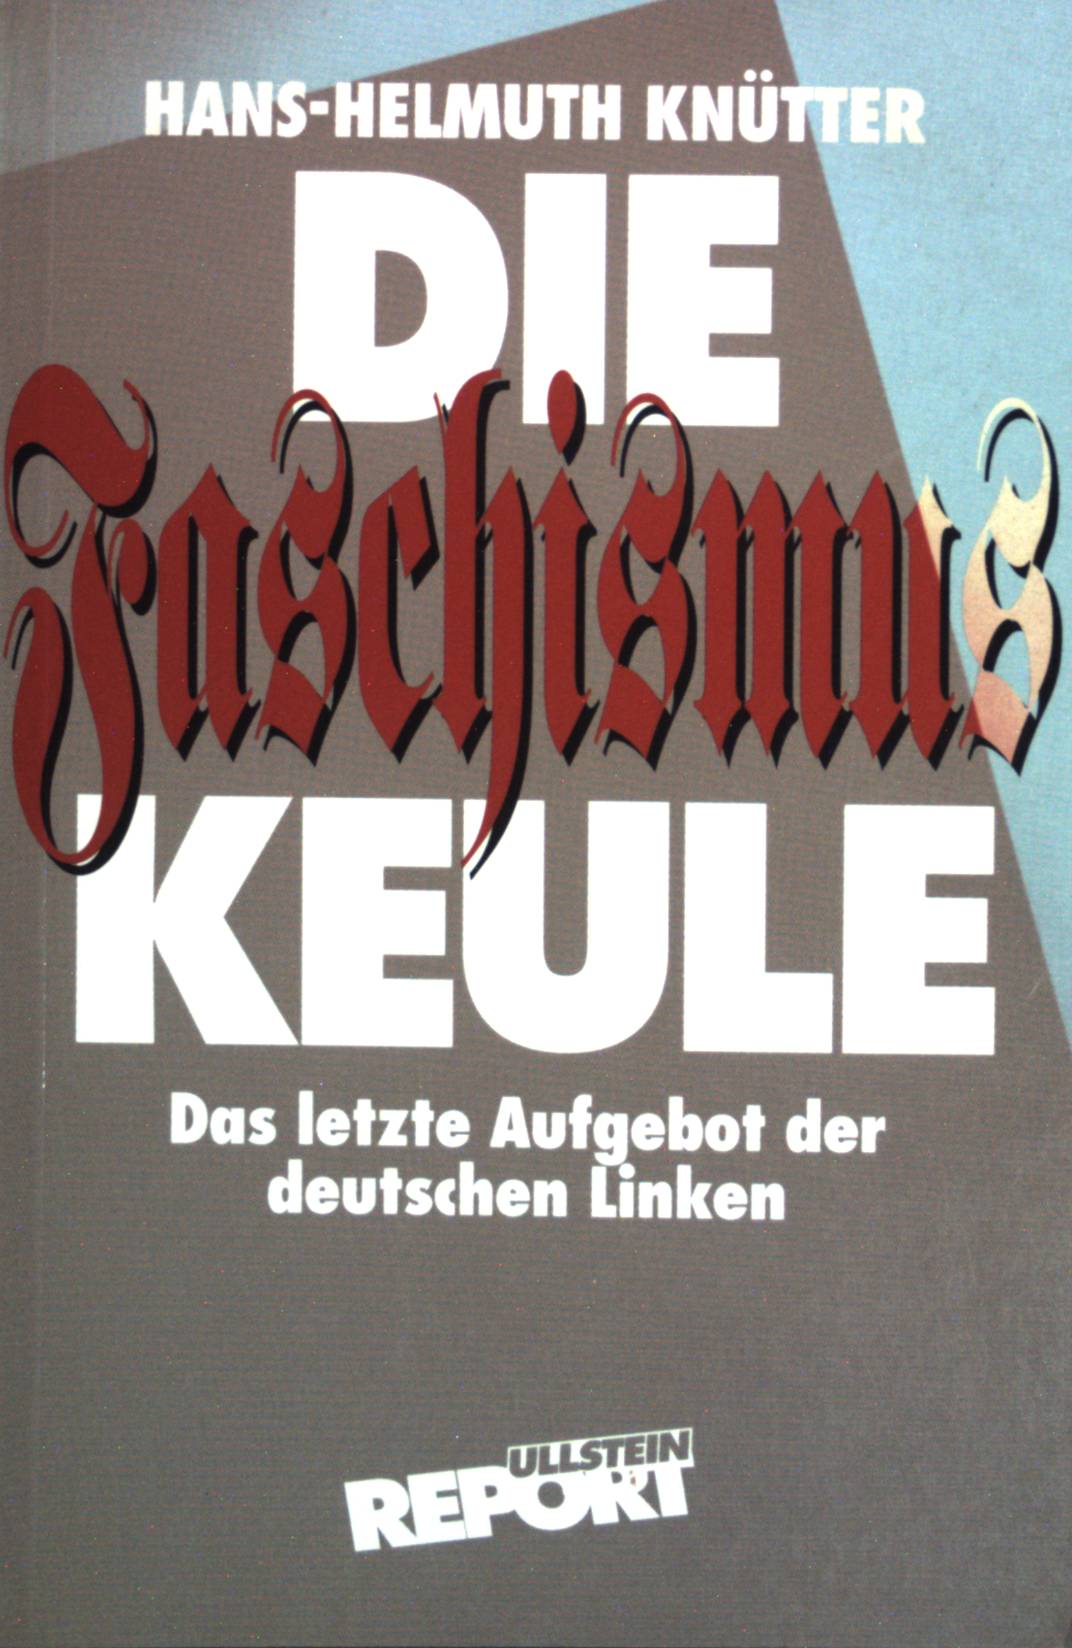 Die Faschismus-Keule - Das letzte Aufgebot der deutschen Linken. - Knütter, Hans-Helmuth